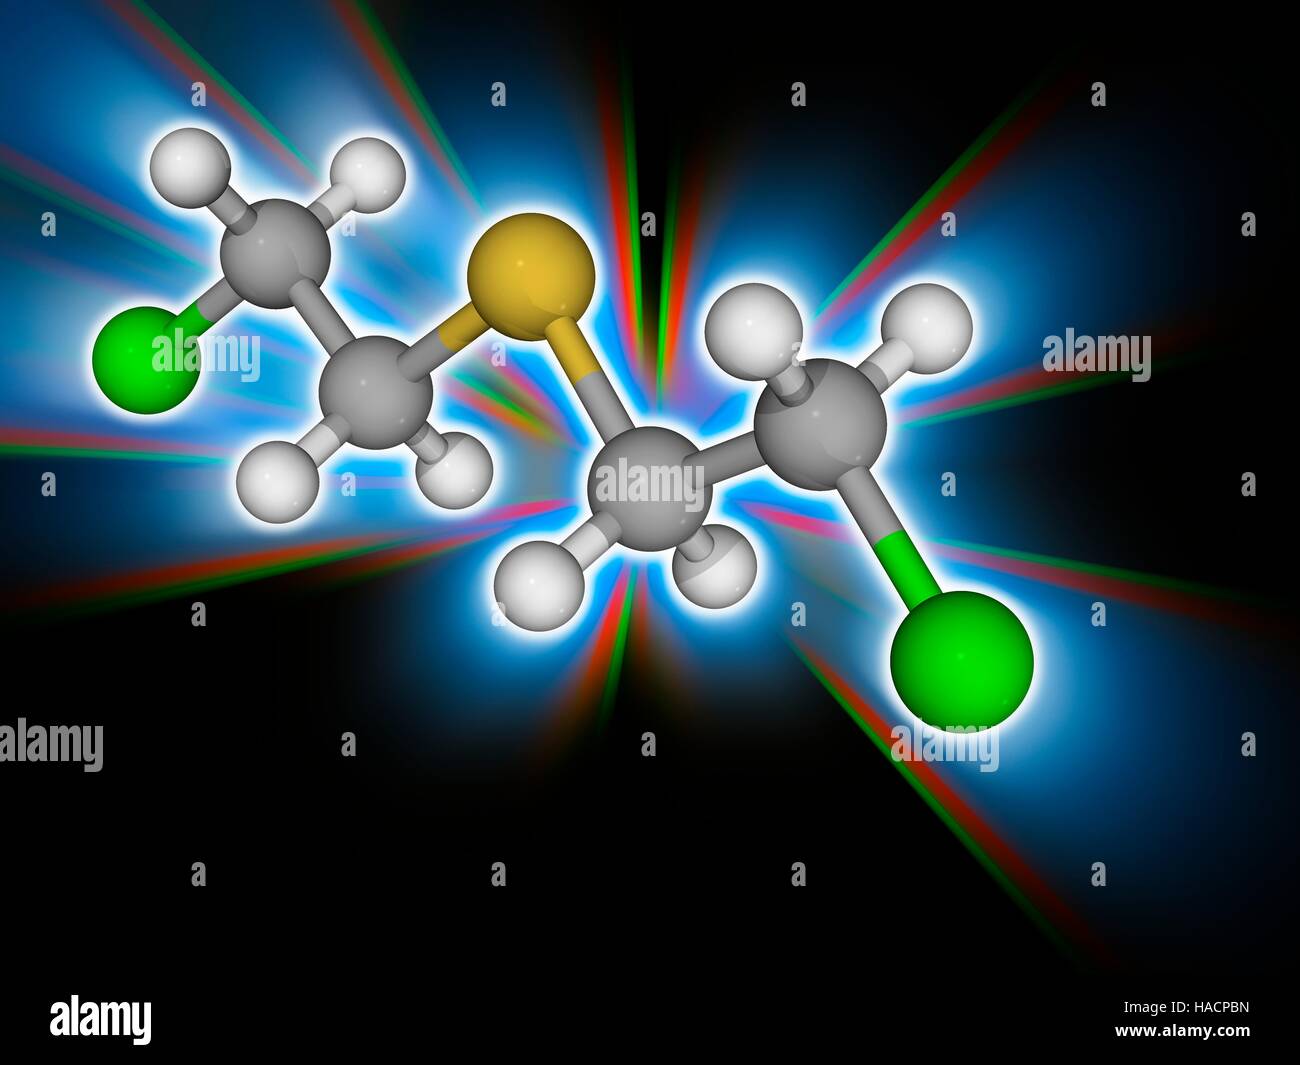 Gas mostarda. Il modello molecolare di zolfo di senape (C4.H8.Cl2.S), noto come gas mostarda. Questa guerra chimica forme agente grandi vescicole sulla cute esposta e nei polmoni. Gli atomi sono rappresentati da sfere e sono codificati a colori: carbonio (grigio), Idrogeno (bianco), zolfo (giallo) e cloro (verde). Illustrazione. Foto Stock